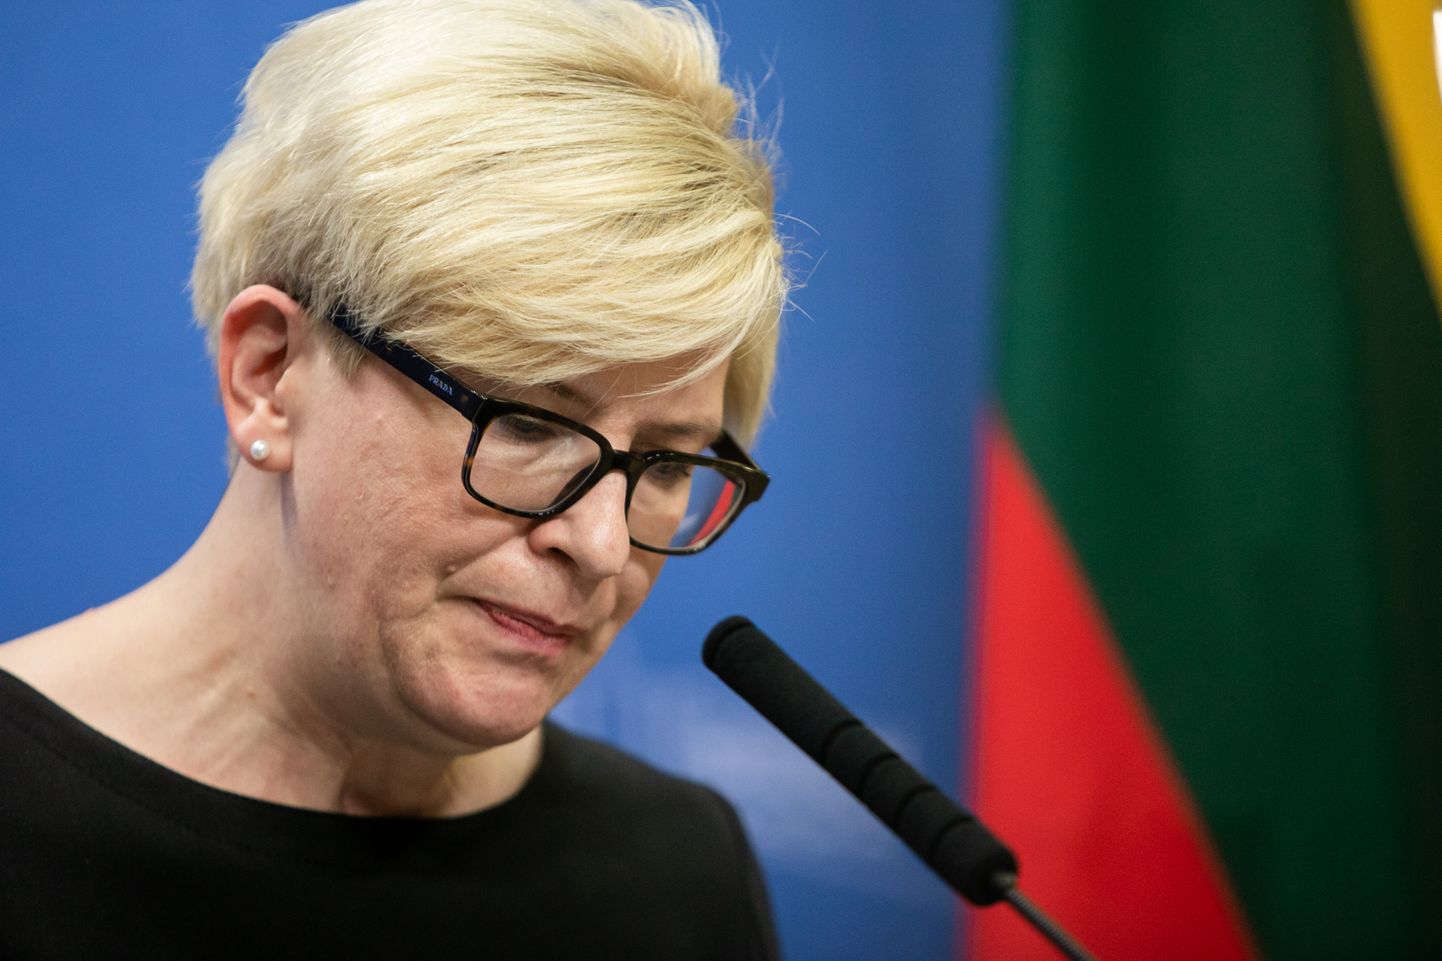 Leedu peaminister Ingrida Šimonytė